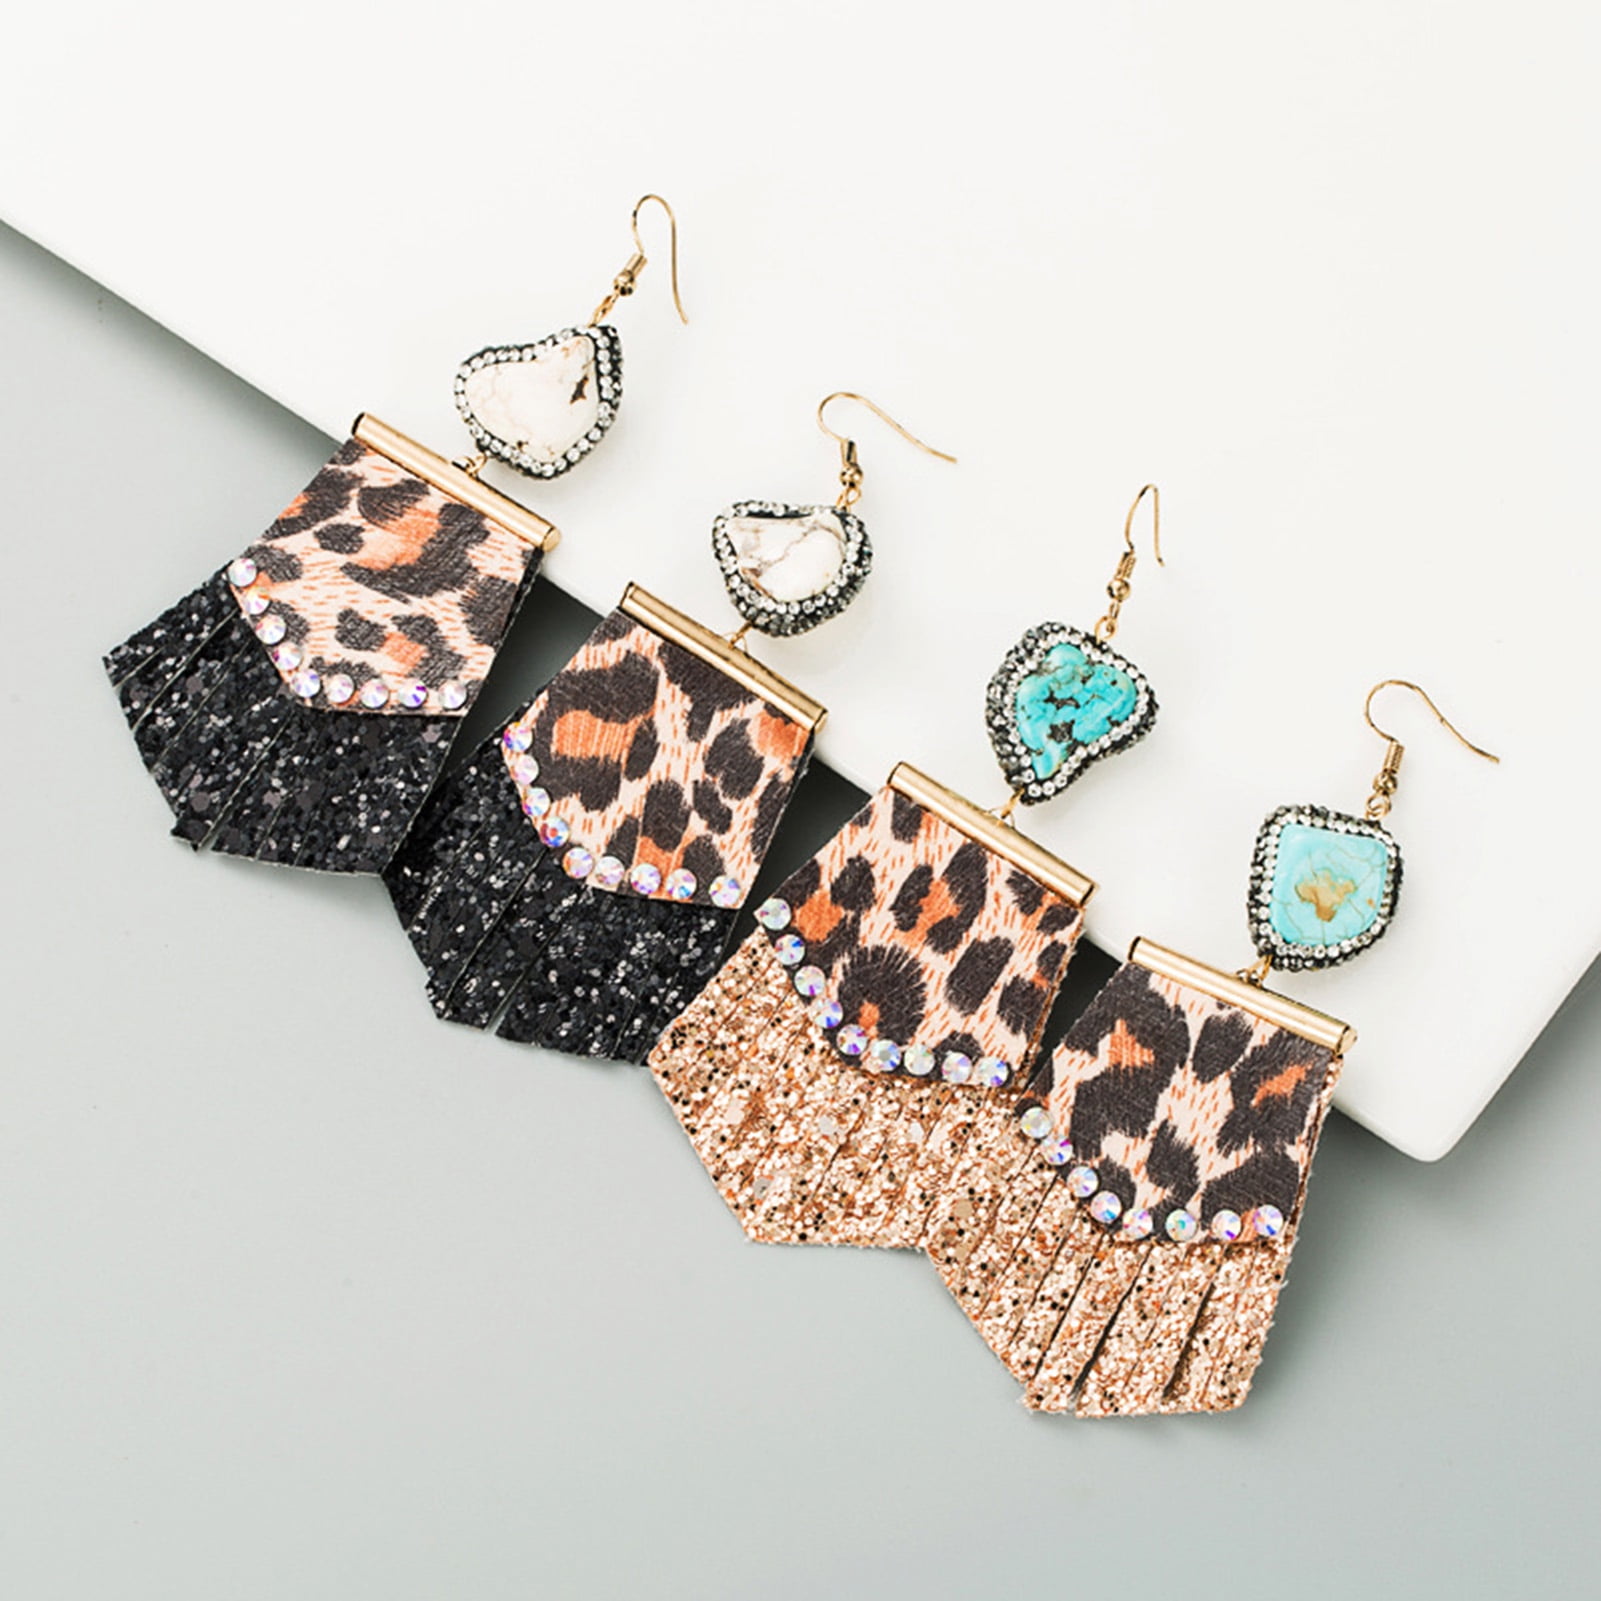 Leopard Print Pleather earrings